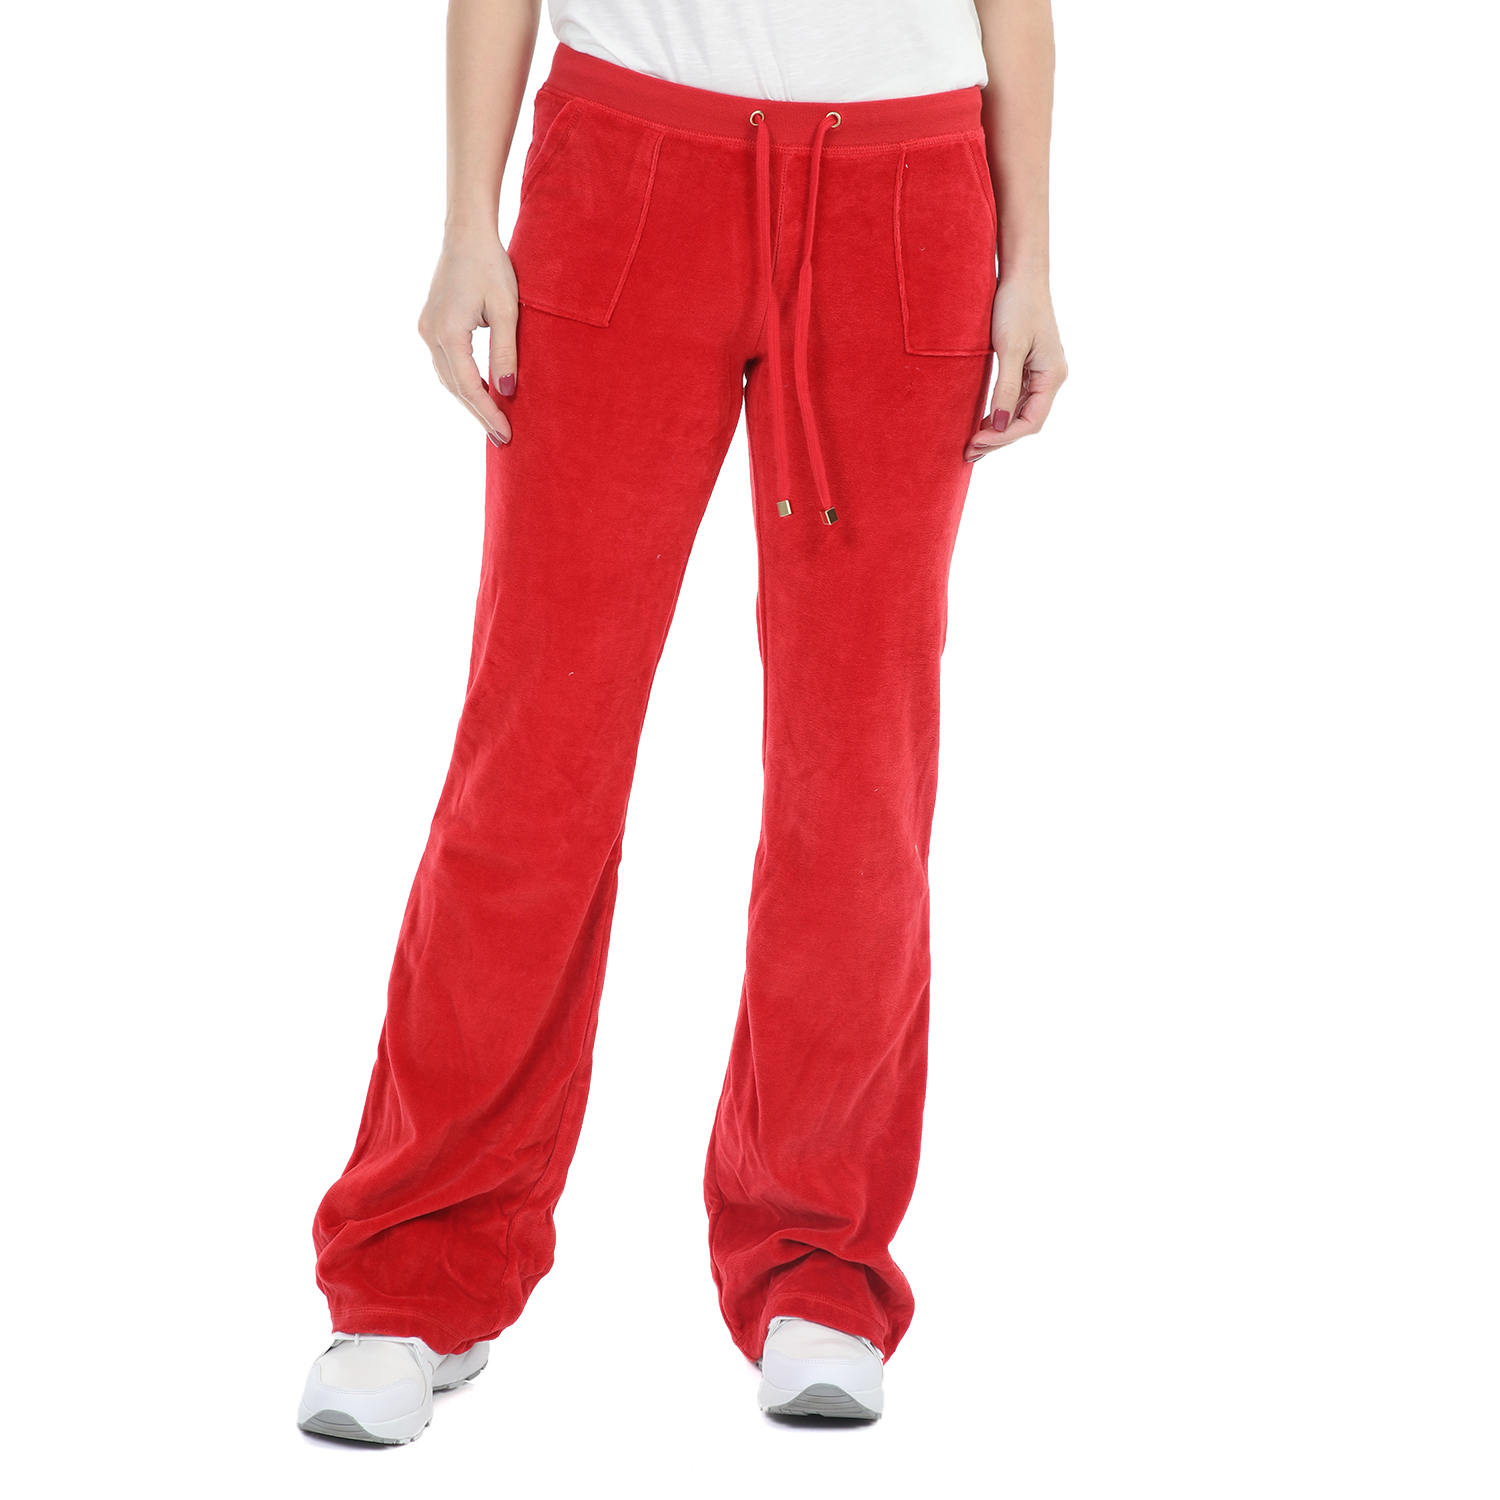 Γυναικεία/Ρούχα/Παντελόνια/Φόρμες FOUR ANGELS - Γυναικείο βελούδινο παντελόνι φόρμας FOUR ANGELS BASIC κόκκινο